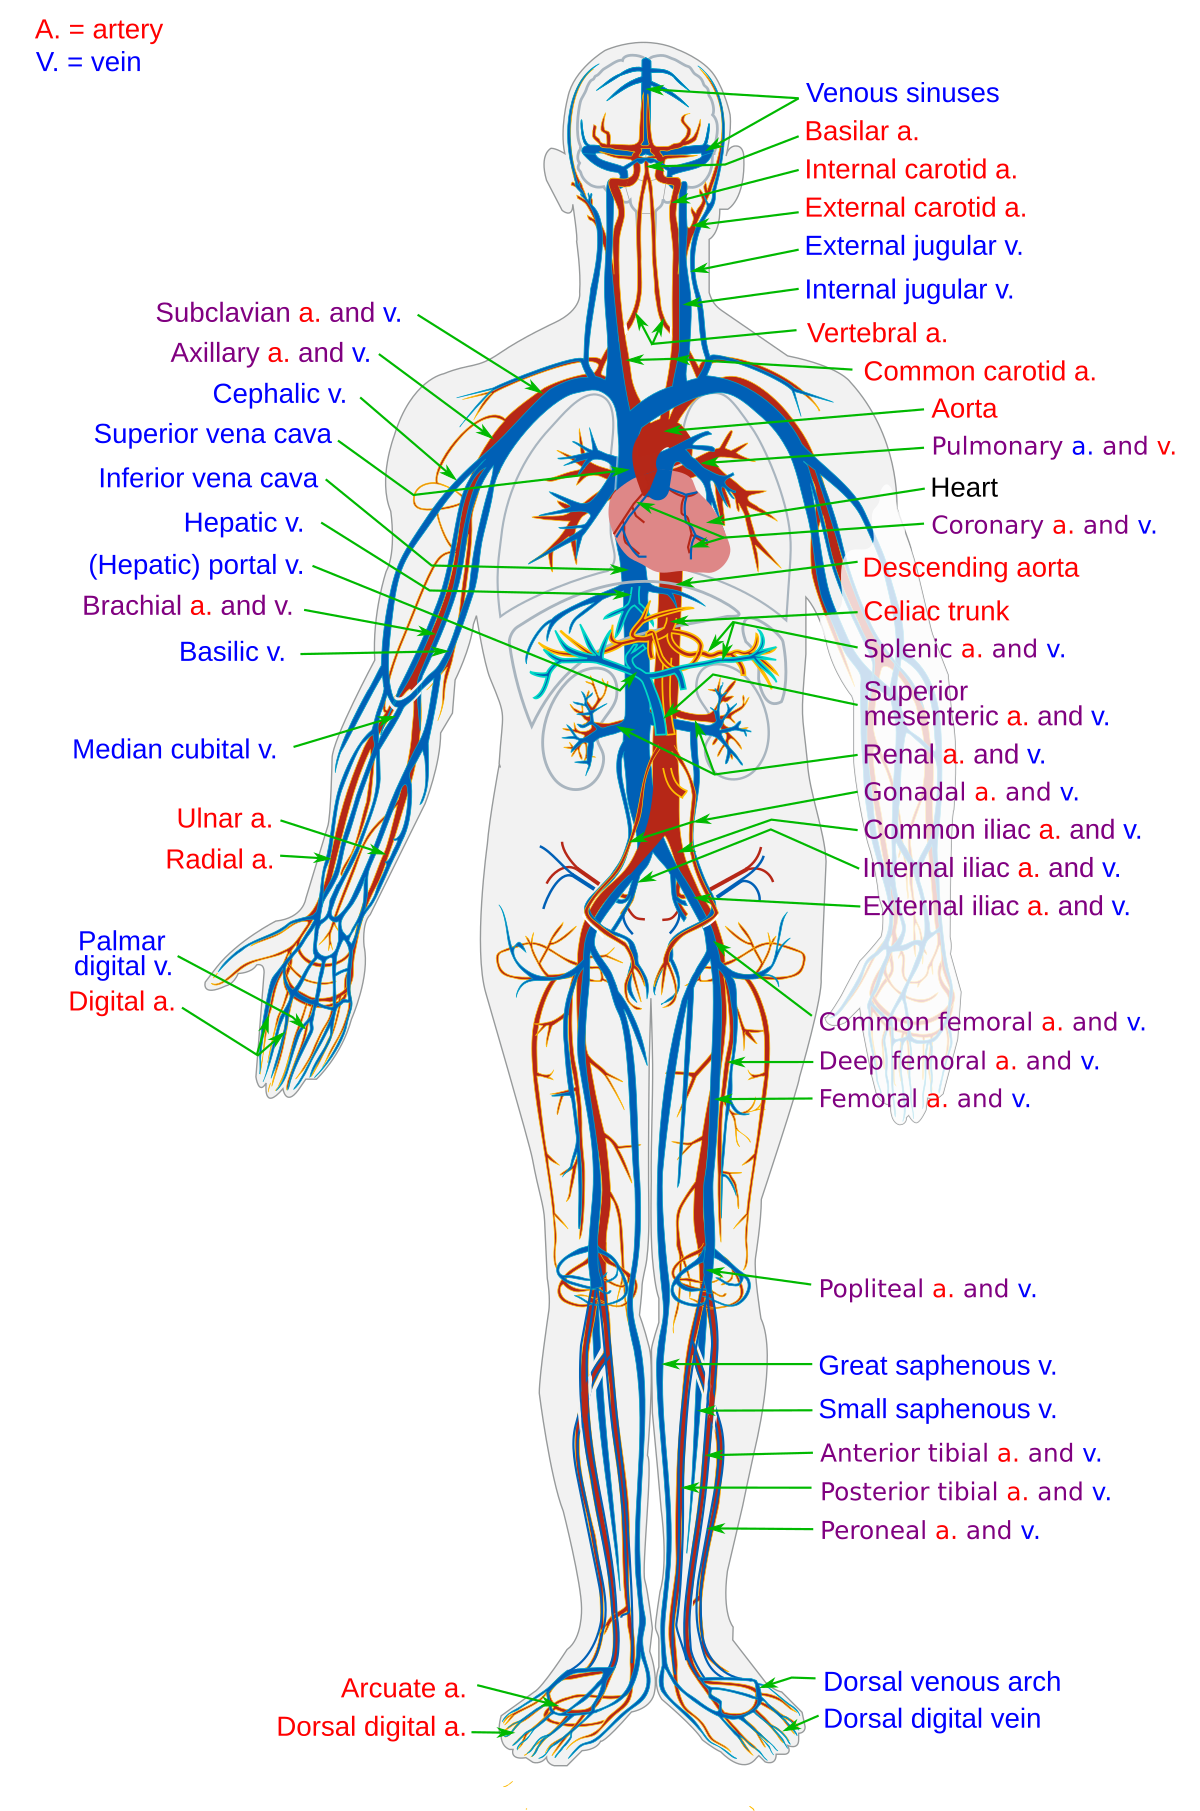 Circulatory system - Wikipedia